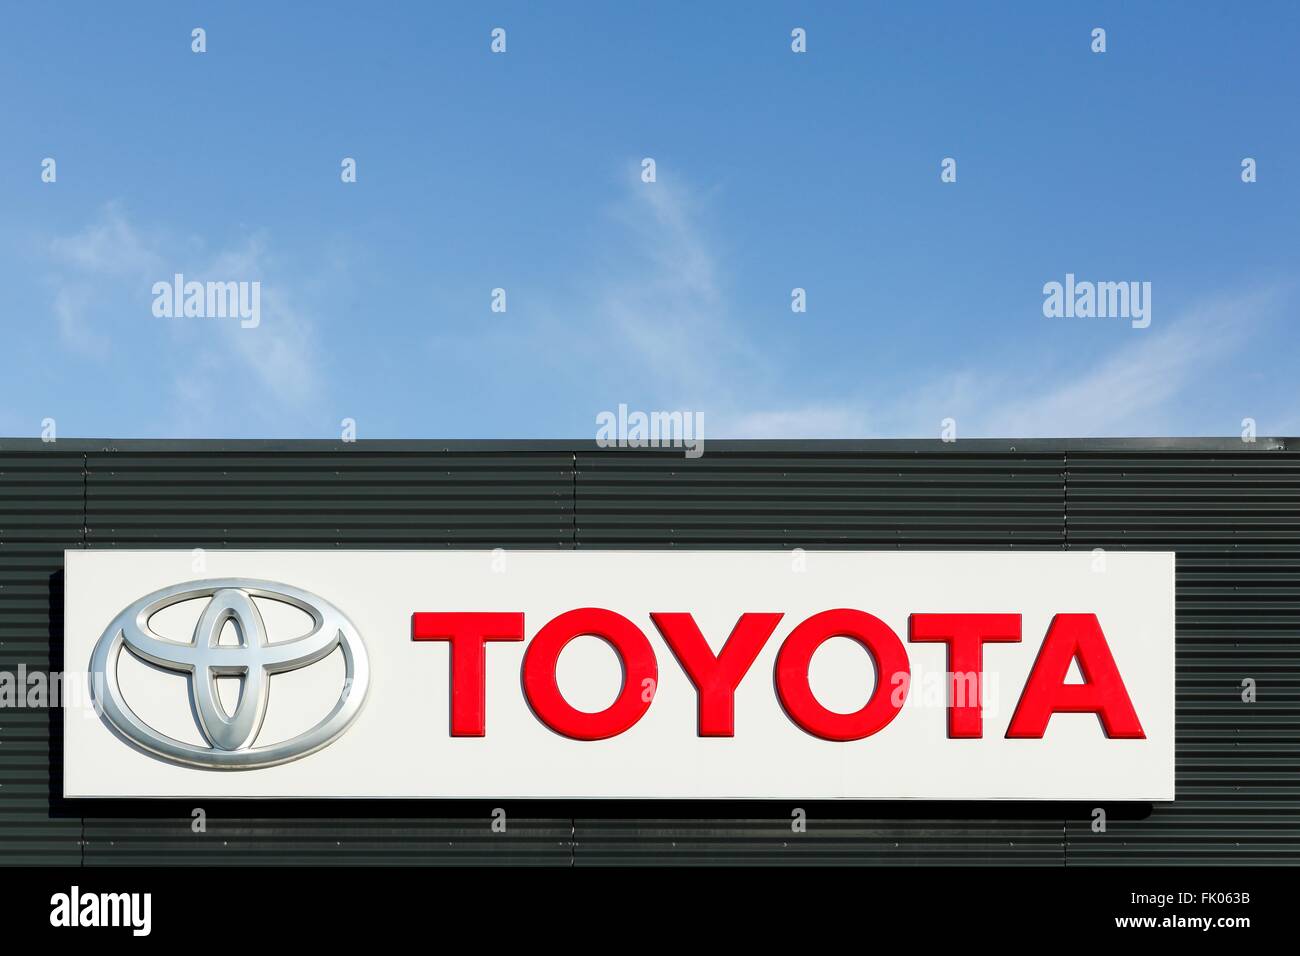 Toyota logo on a facade Stock Photo